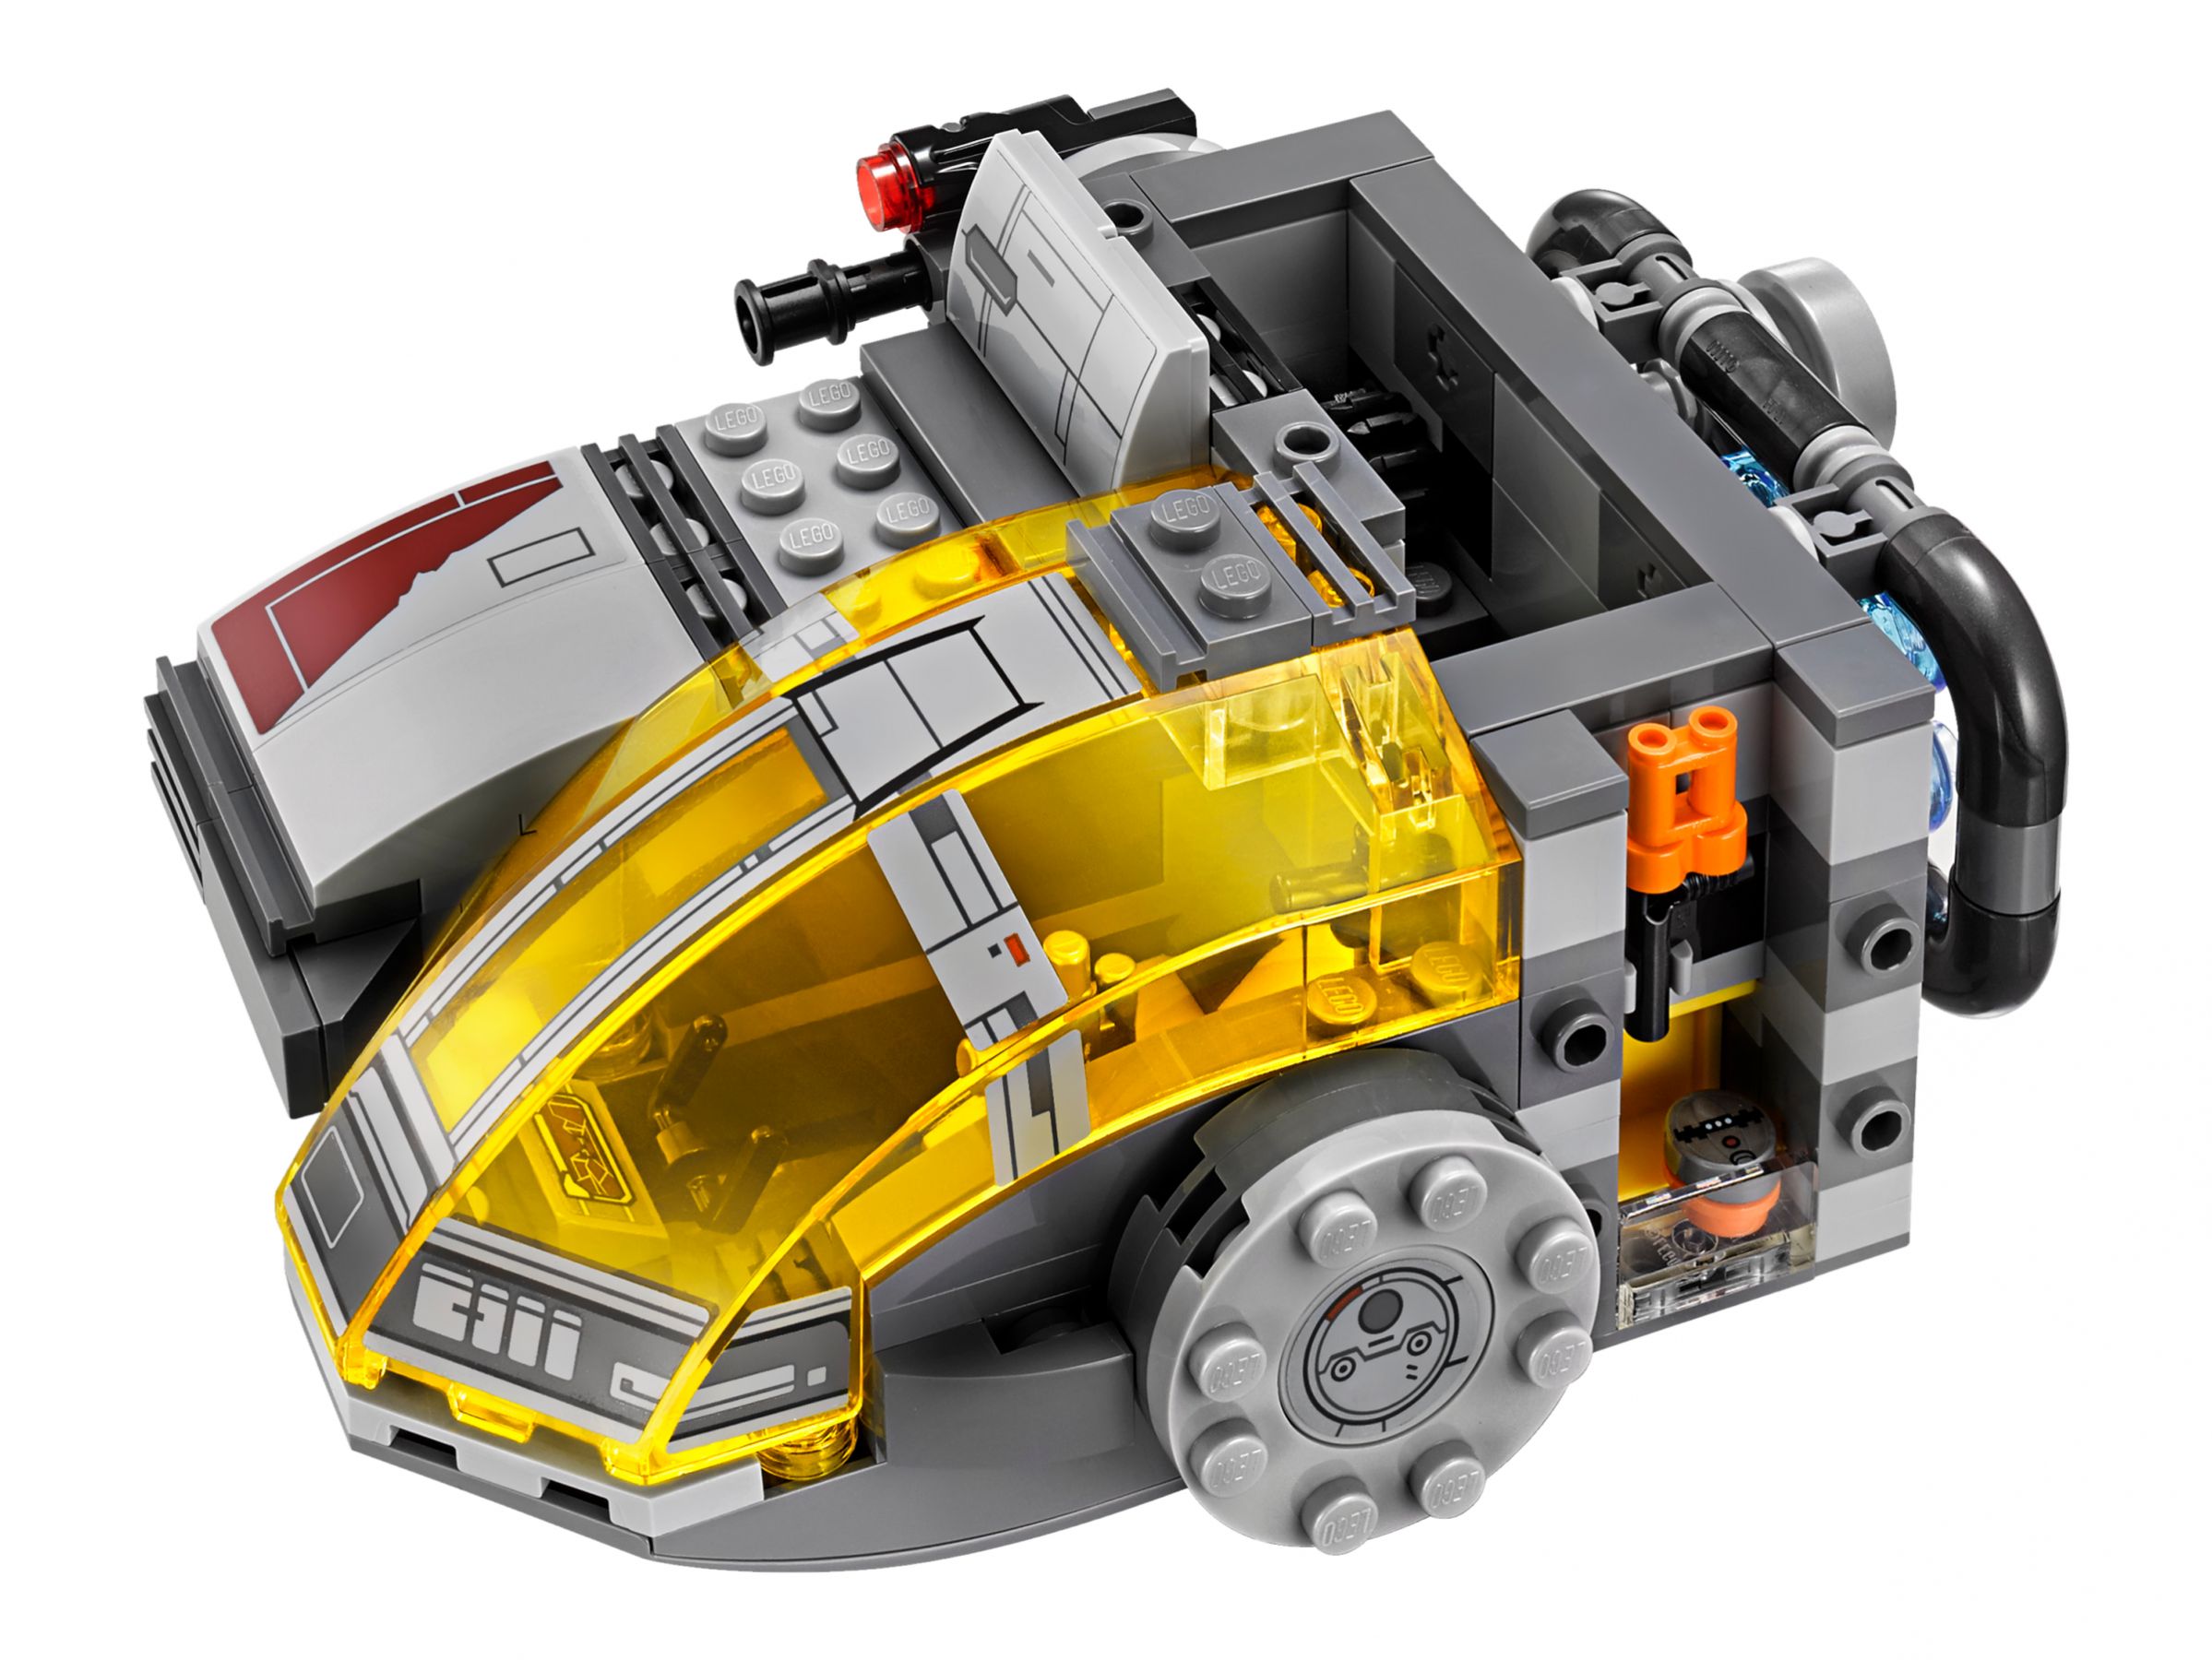 LEGO Star Wars 75176 Resistance Transport Pod™ LEGO_75176_alt3.jpg